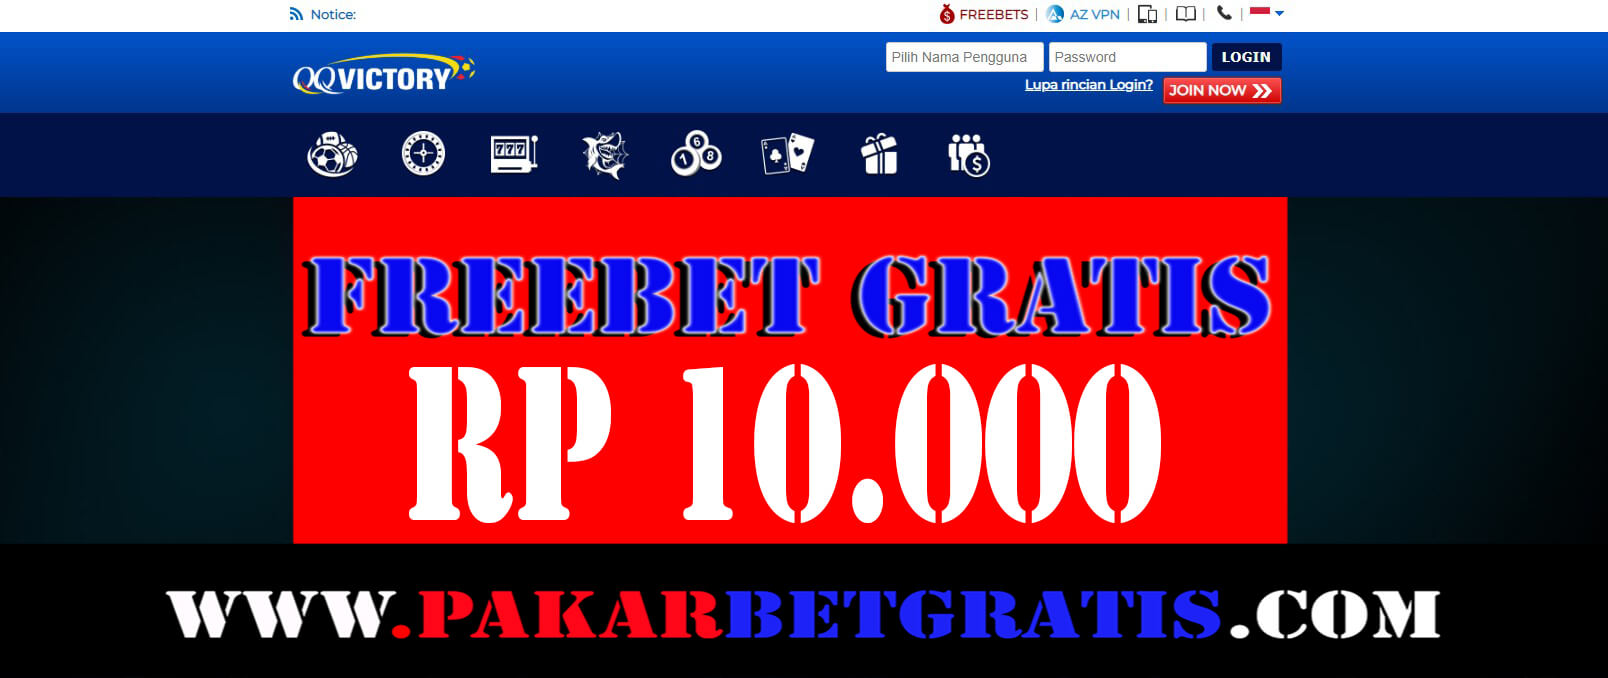 QQvictory Freebet Gratis Rp 10.000 tanpa deposit